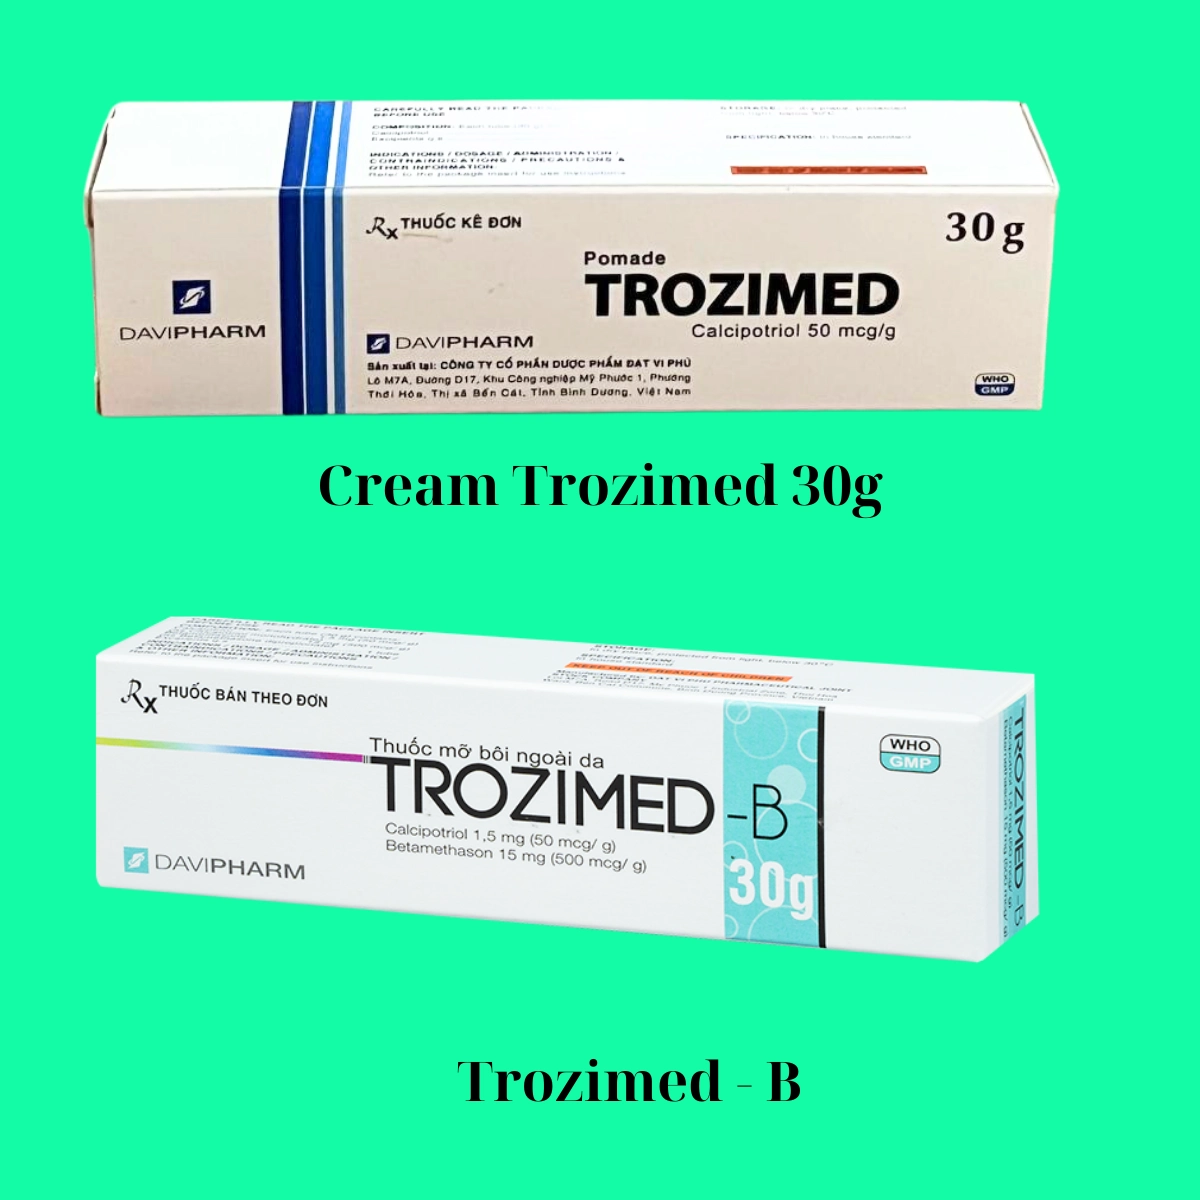 Phân biệt Trozimed 30g và Trozimed - B